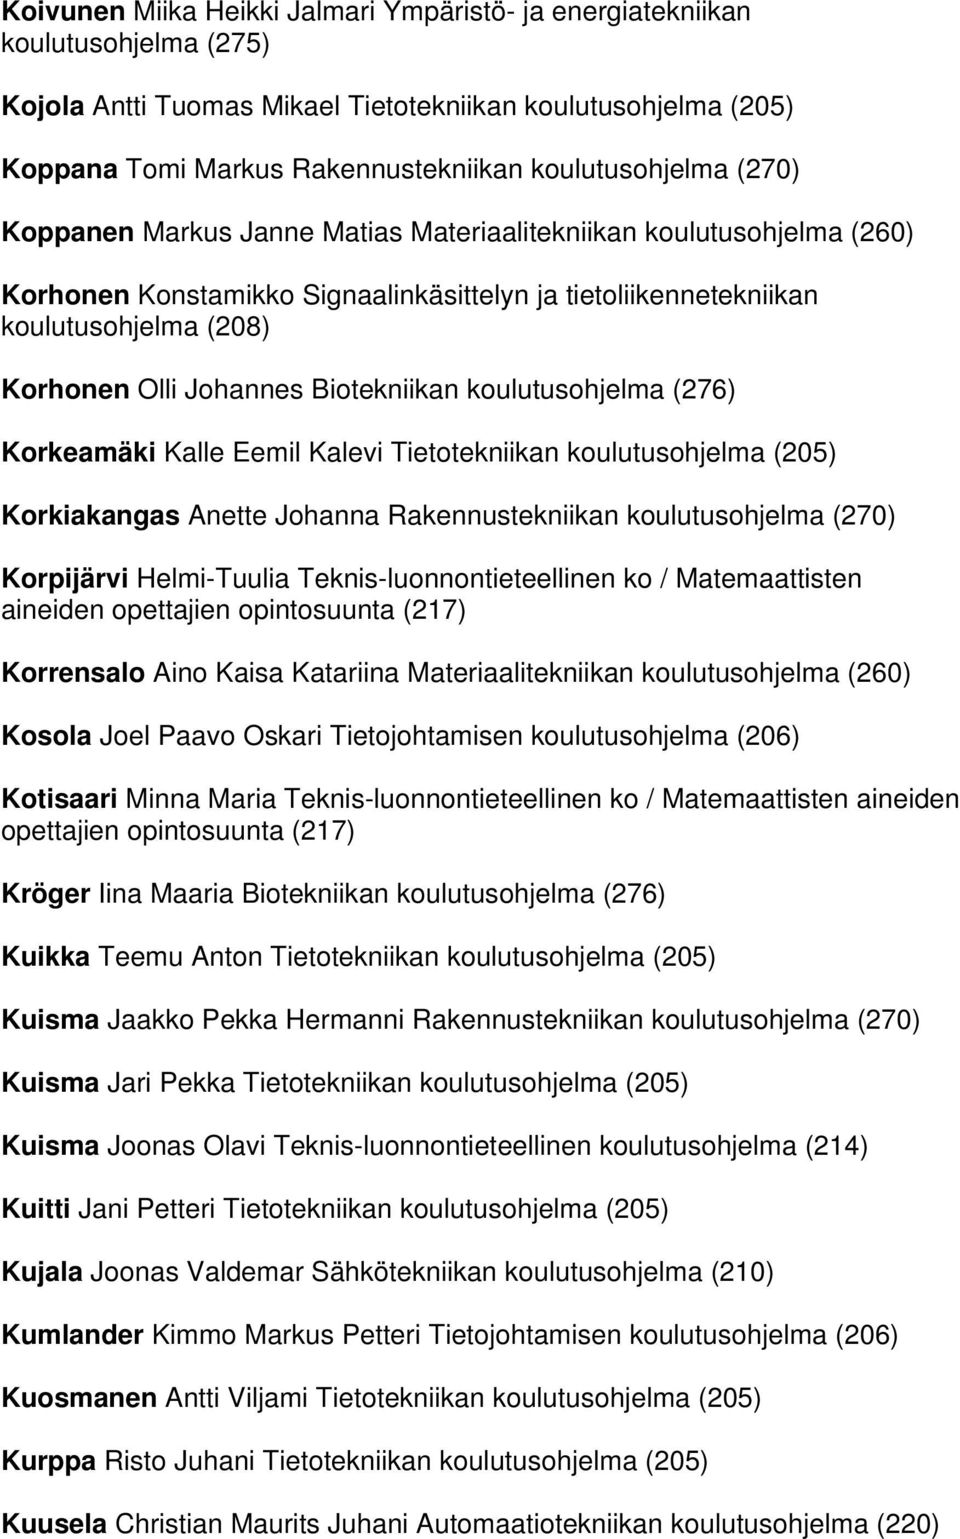 koulutusohjelma (276) Korkeamäki Kalle Eemil Kalevi Tietotekniikan koulutusohjelma (205) Korkiakangas Anette Johanna Rakennustekniikan koulutusohjelma (270) Korpijärvi Helmi-Tuulia